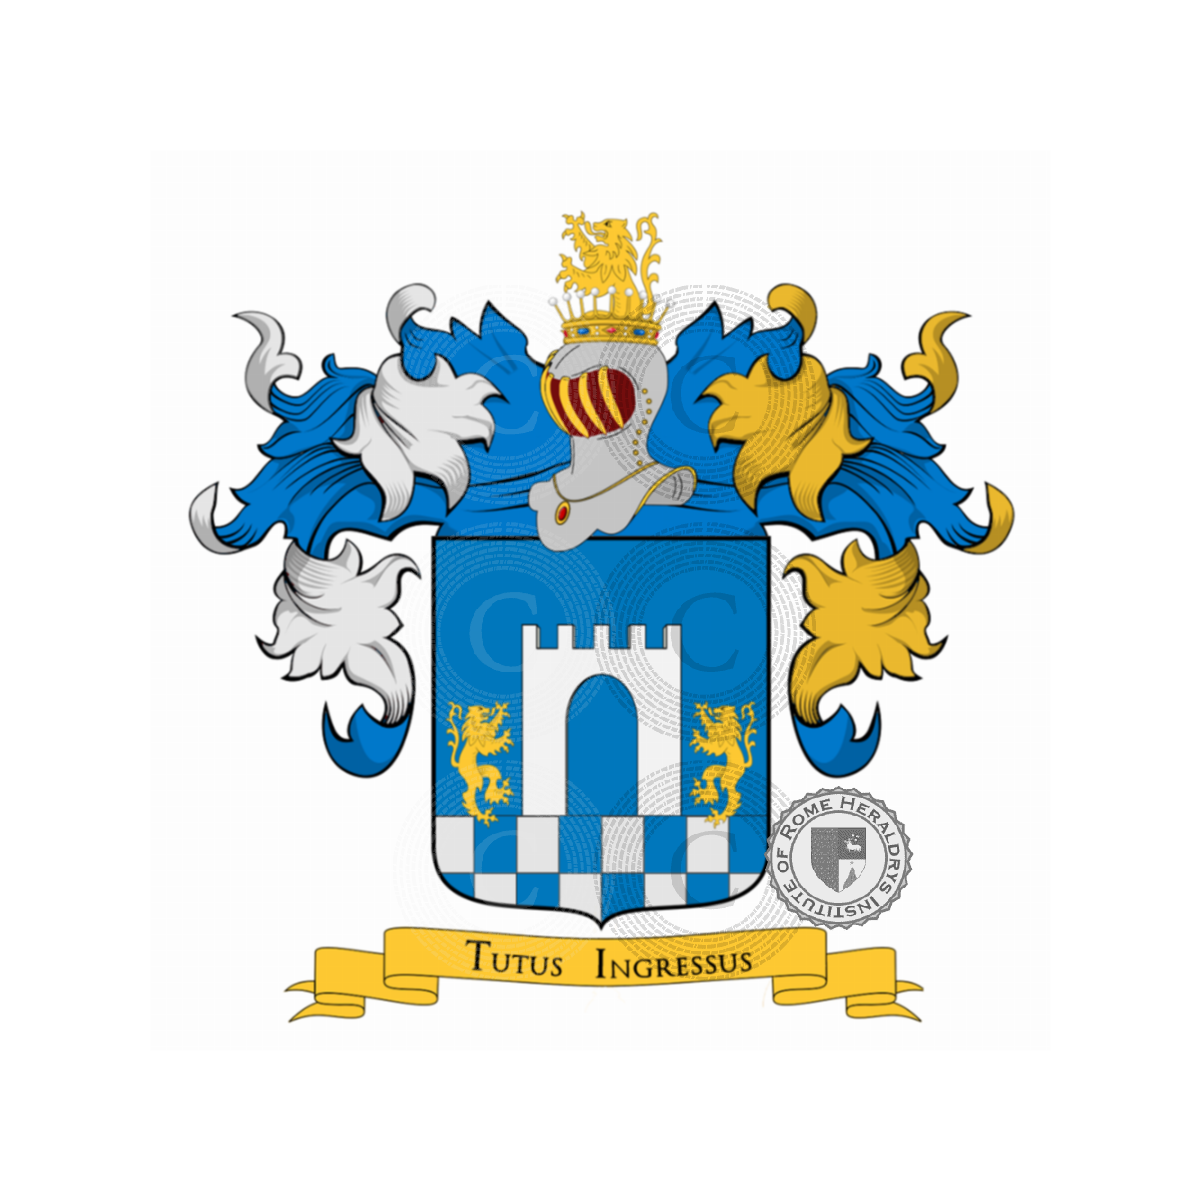 Wappen der FamiliePorta, Alimenti della Porta,de la Porta de S.Urso,de la Porte,de Quart,della Porta,della Porta de Carli,Portis